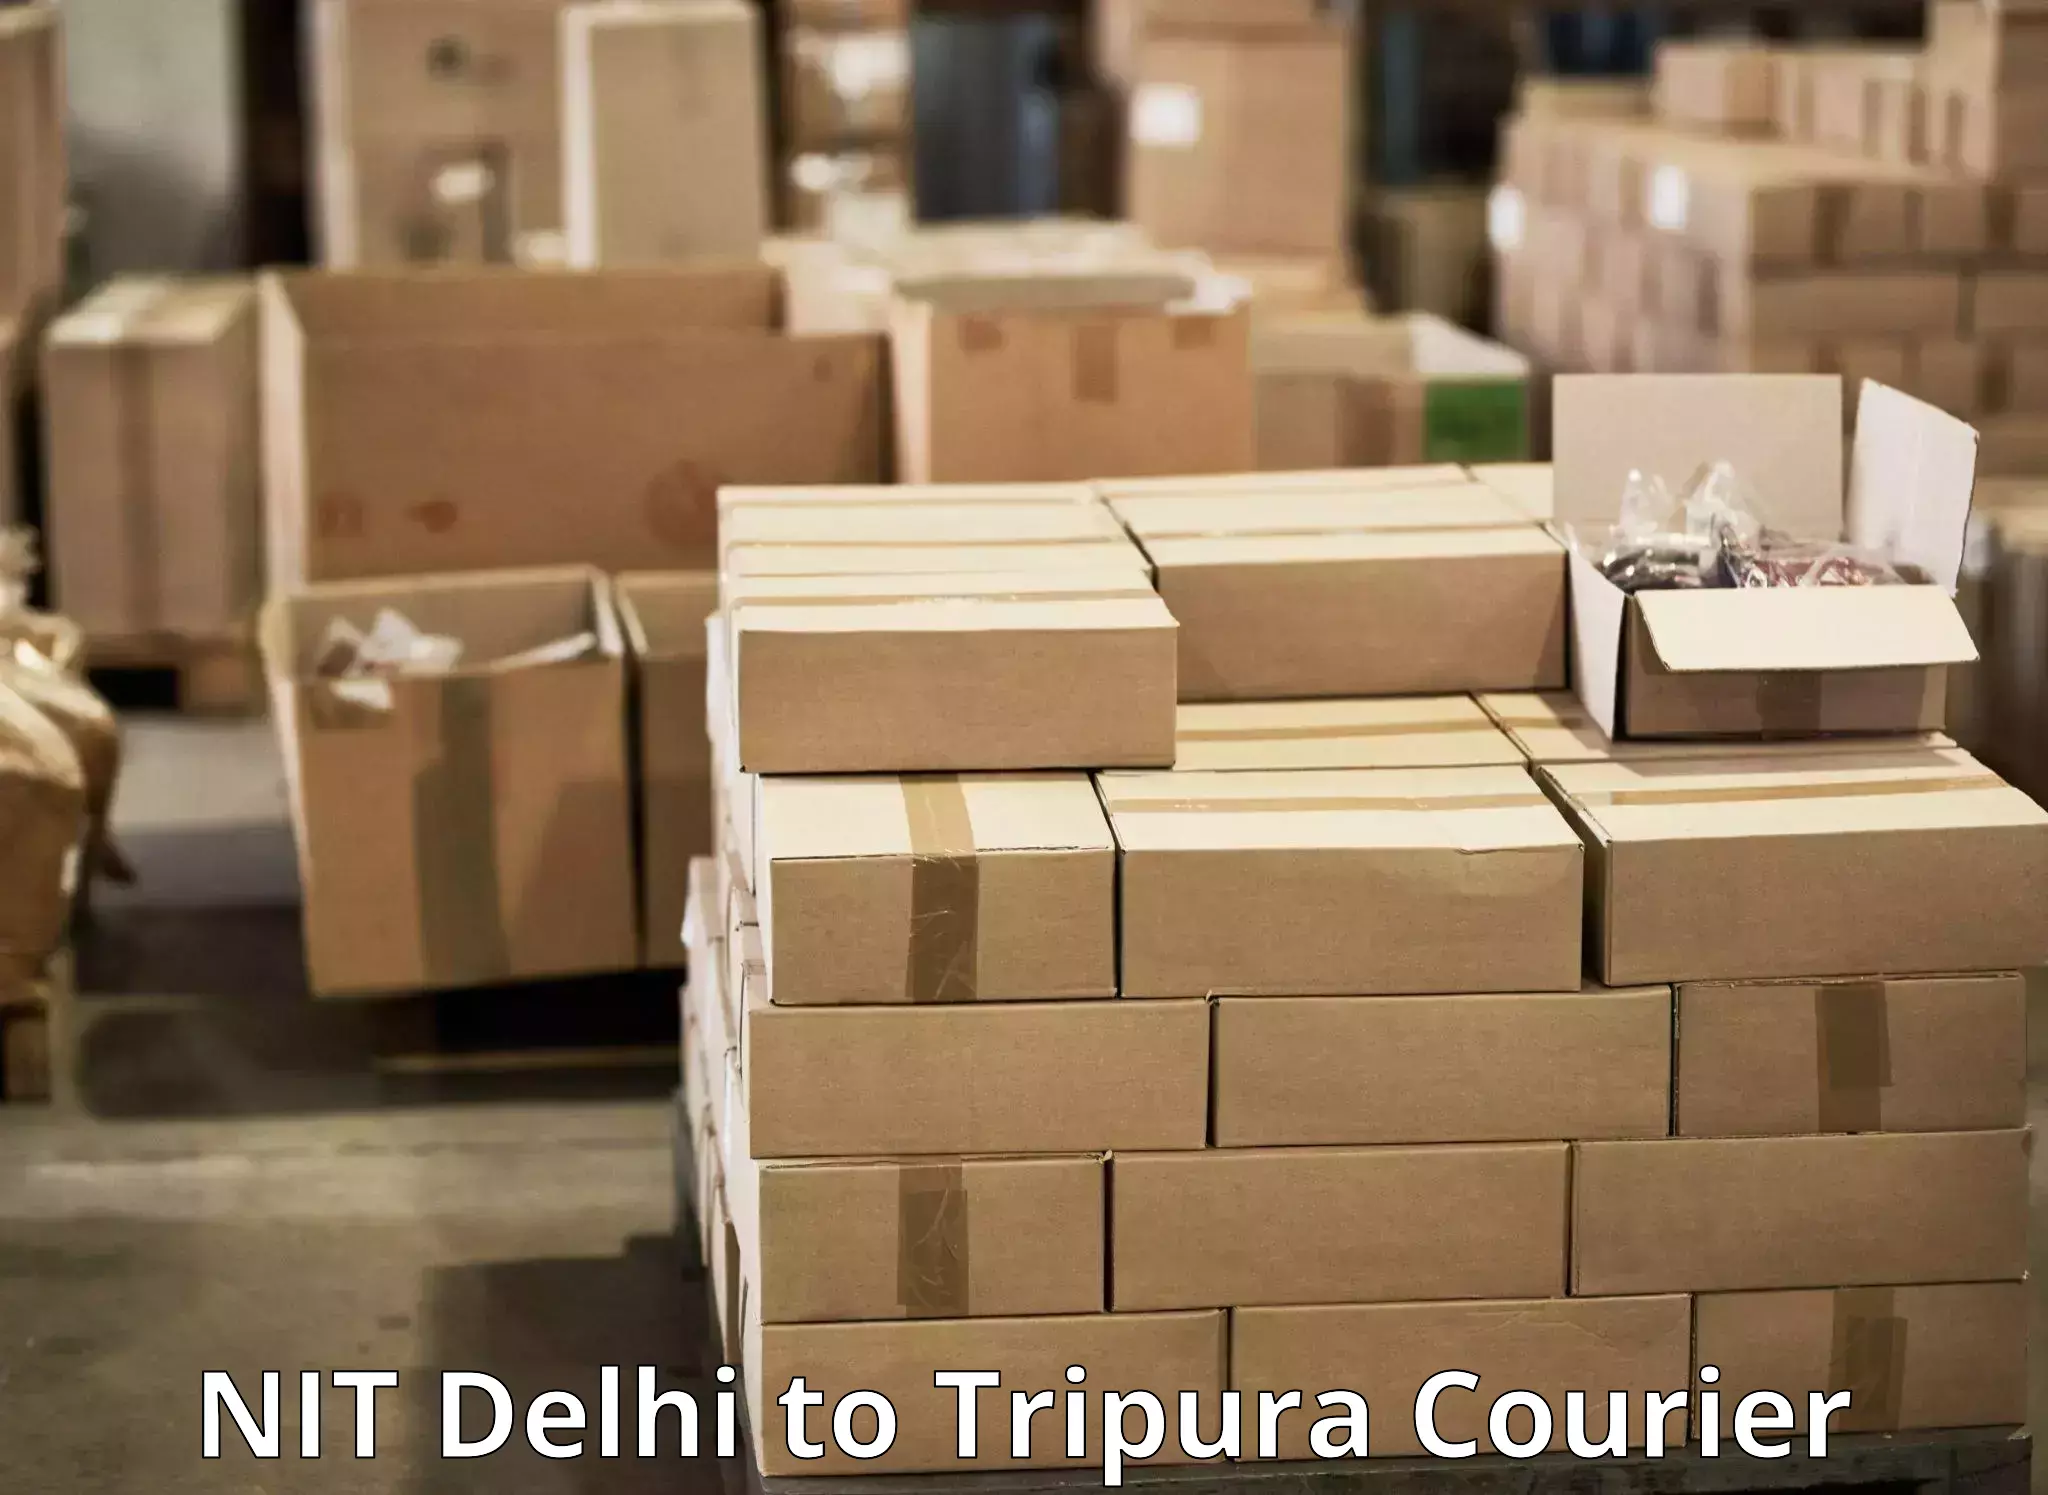 Door-to-door freight service NIT Delhi to Amarpur